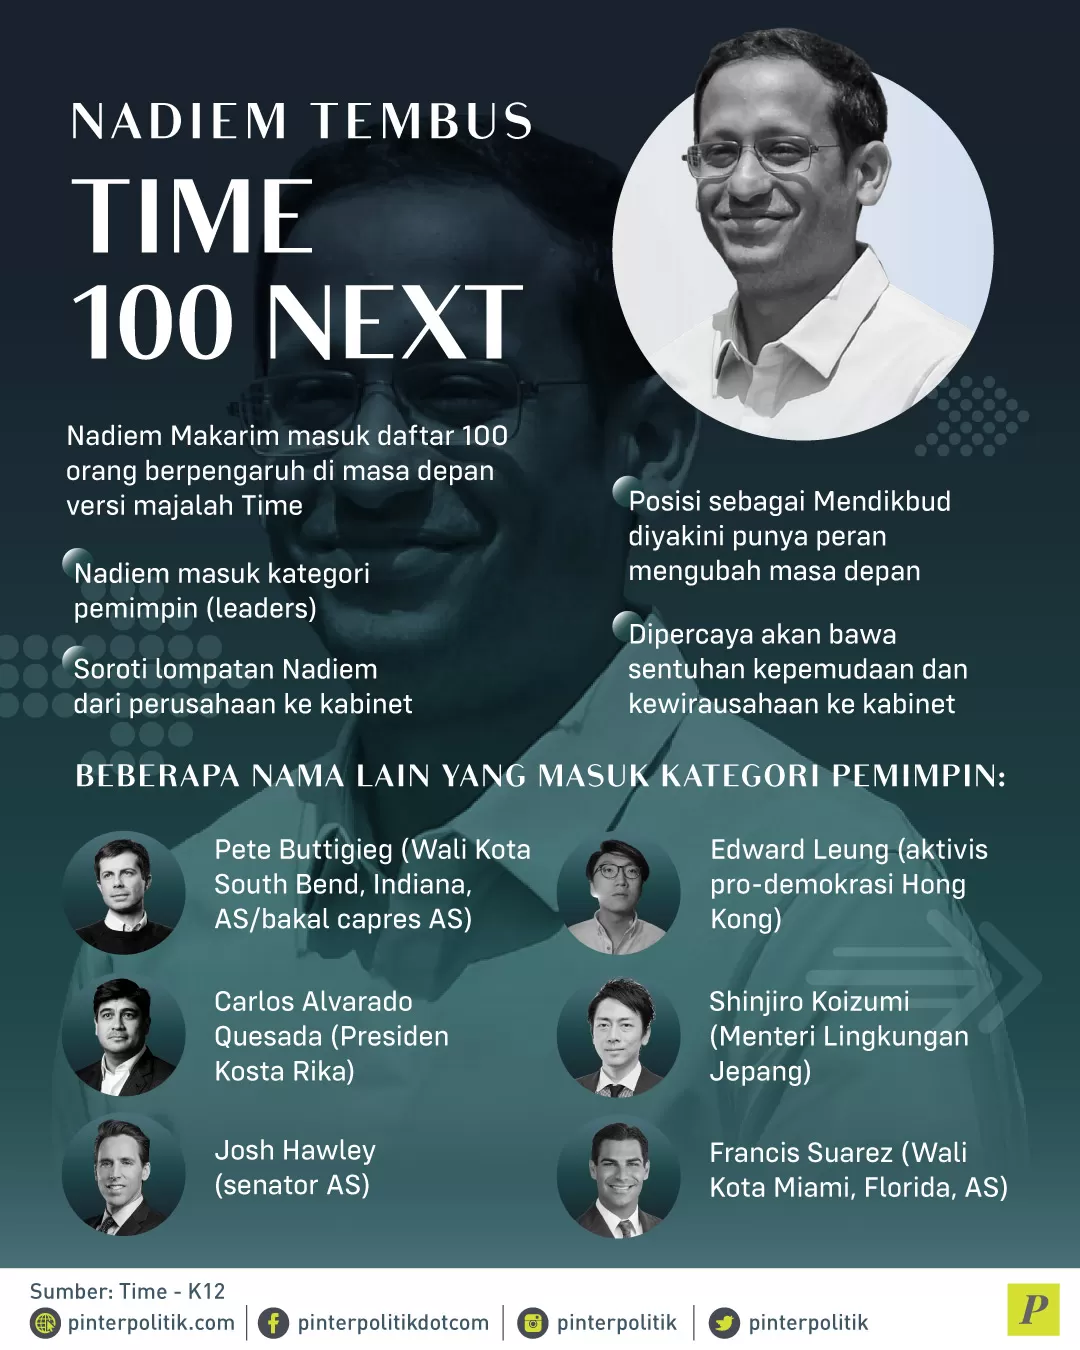 Nadiem Makarin masuk daftar 100 orang berpengaruh di majalah Time